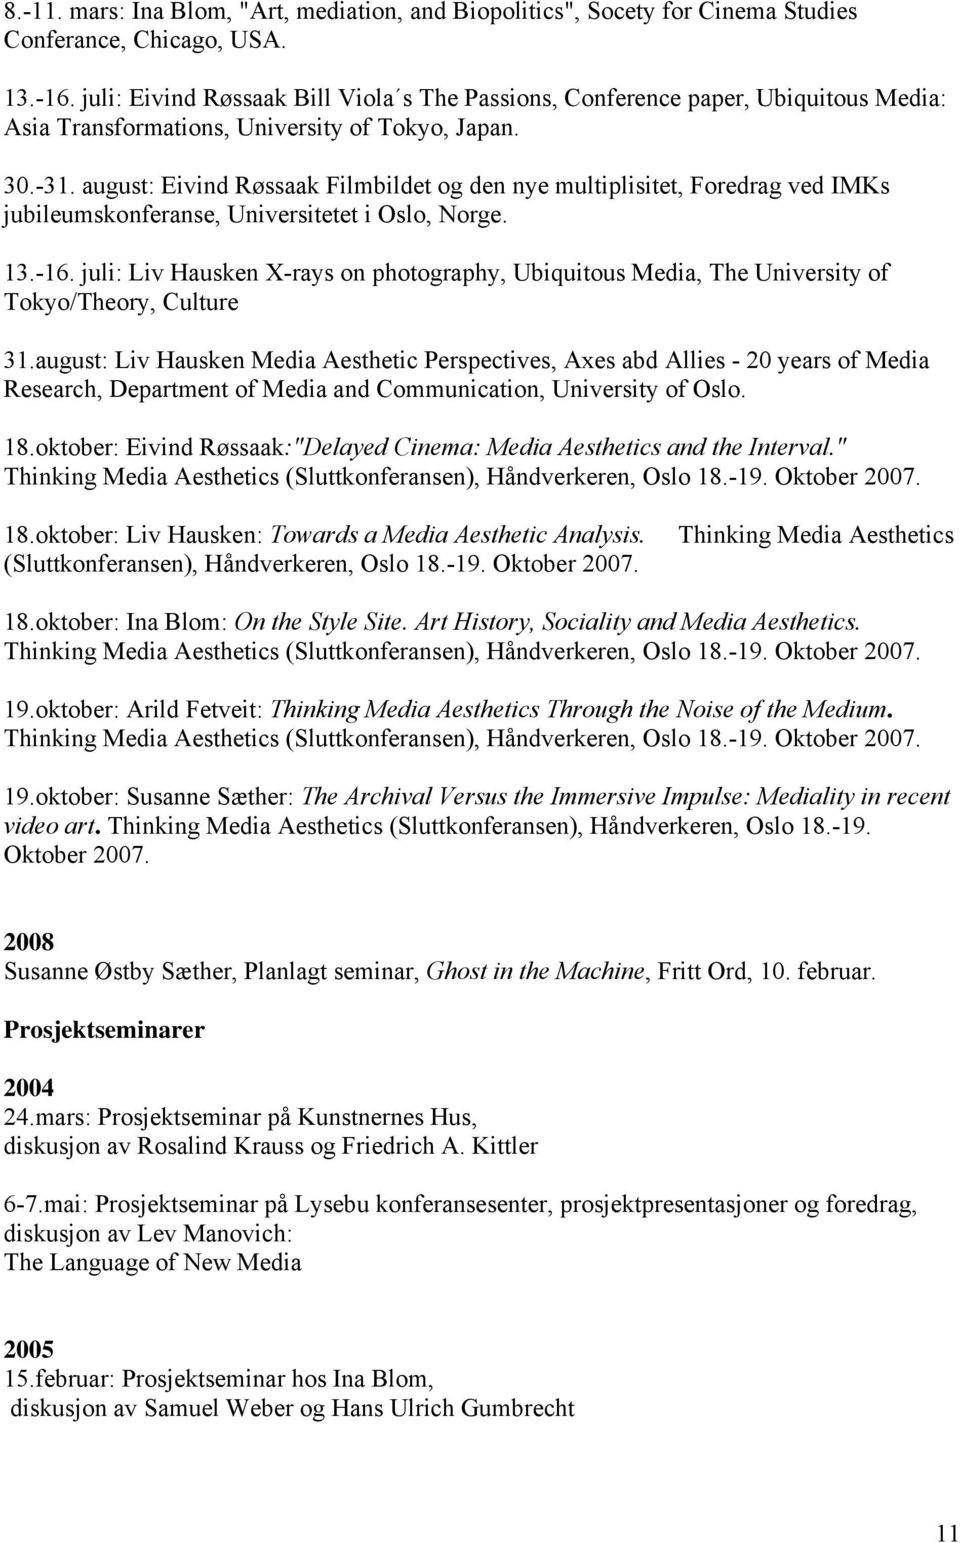 august: Eivind Røssaak Filmbildet og den nye multiplisitet, Foredrag ved IMKs jubileumskonferanse, Universitetet i Oslo, Norge. 13.-16.